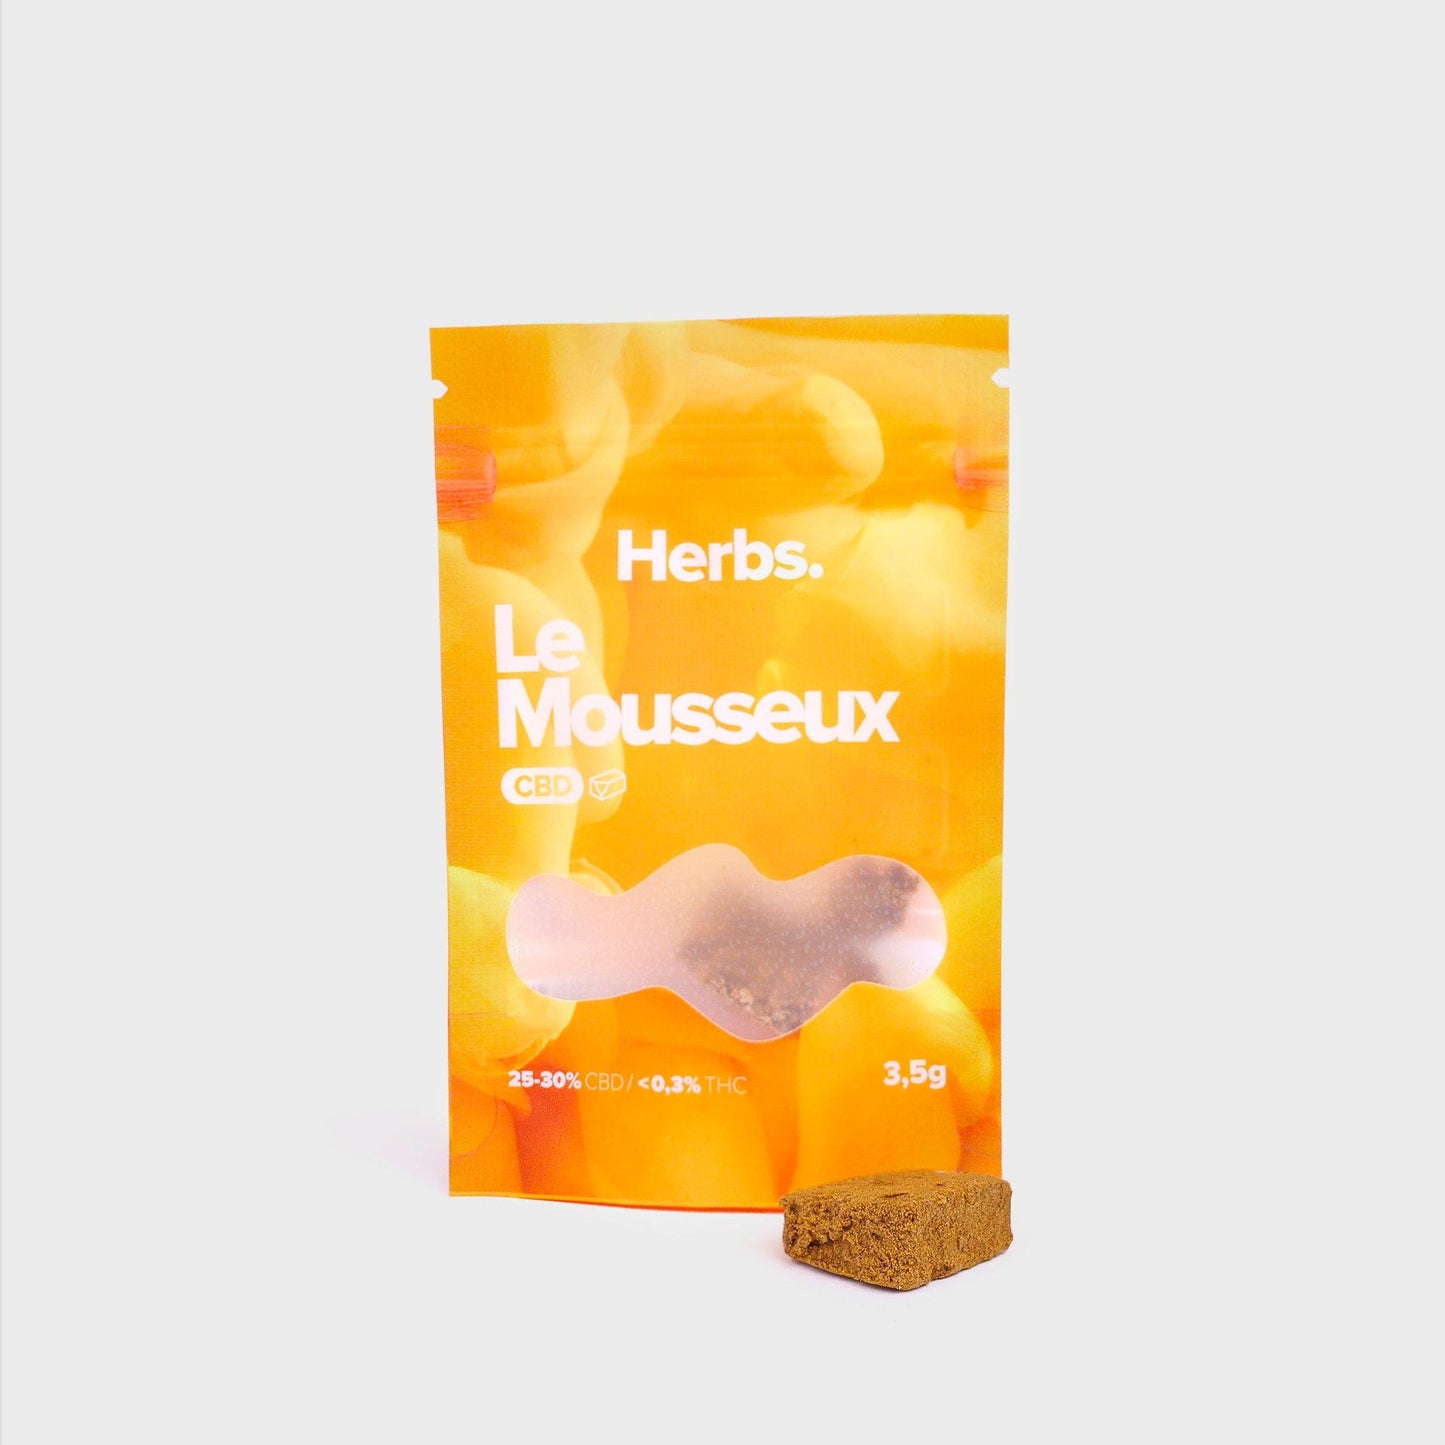 mousseux-cbd-herbs-pack-produit